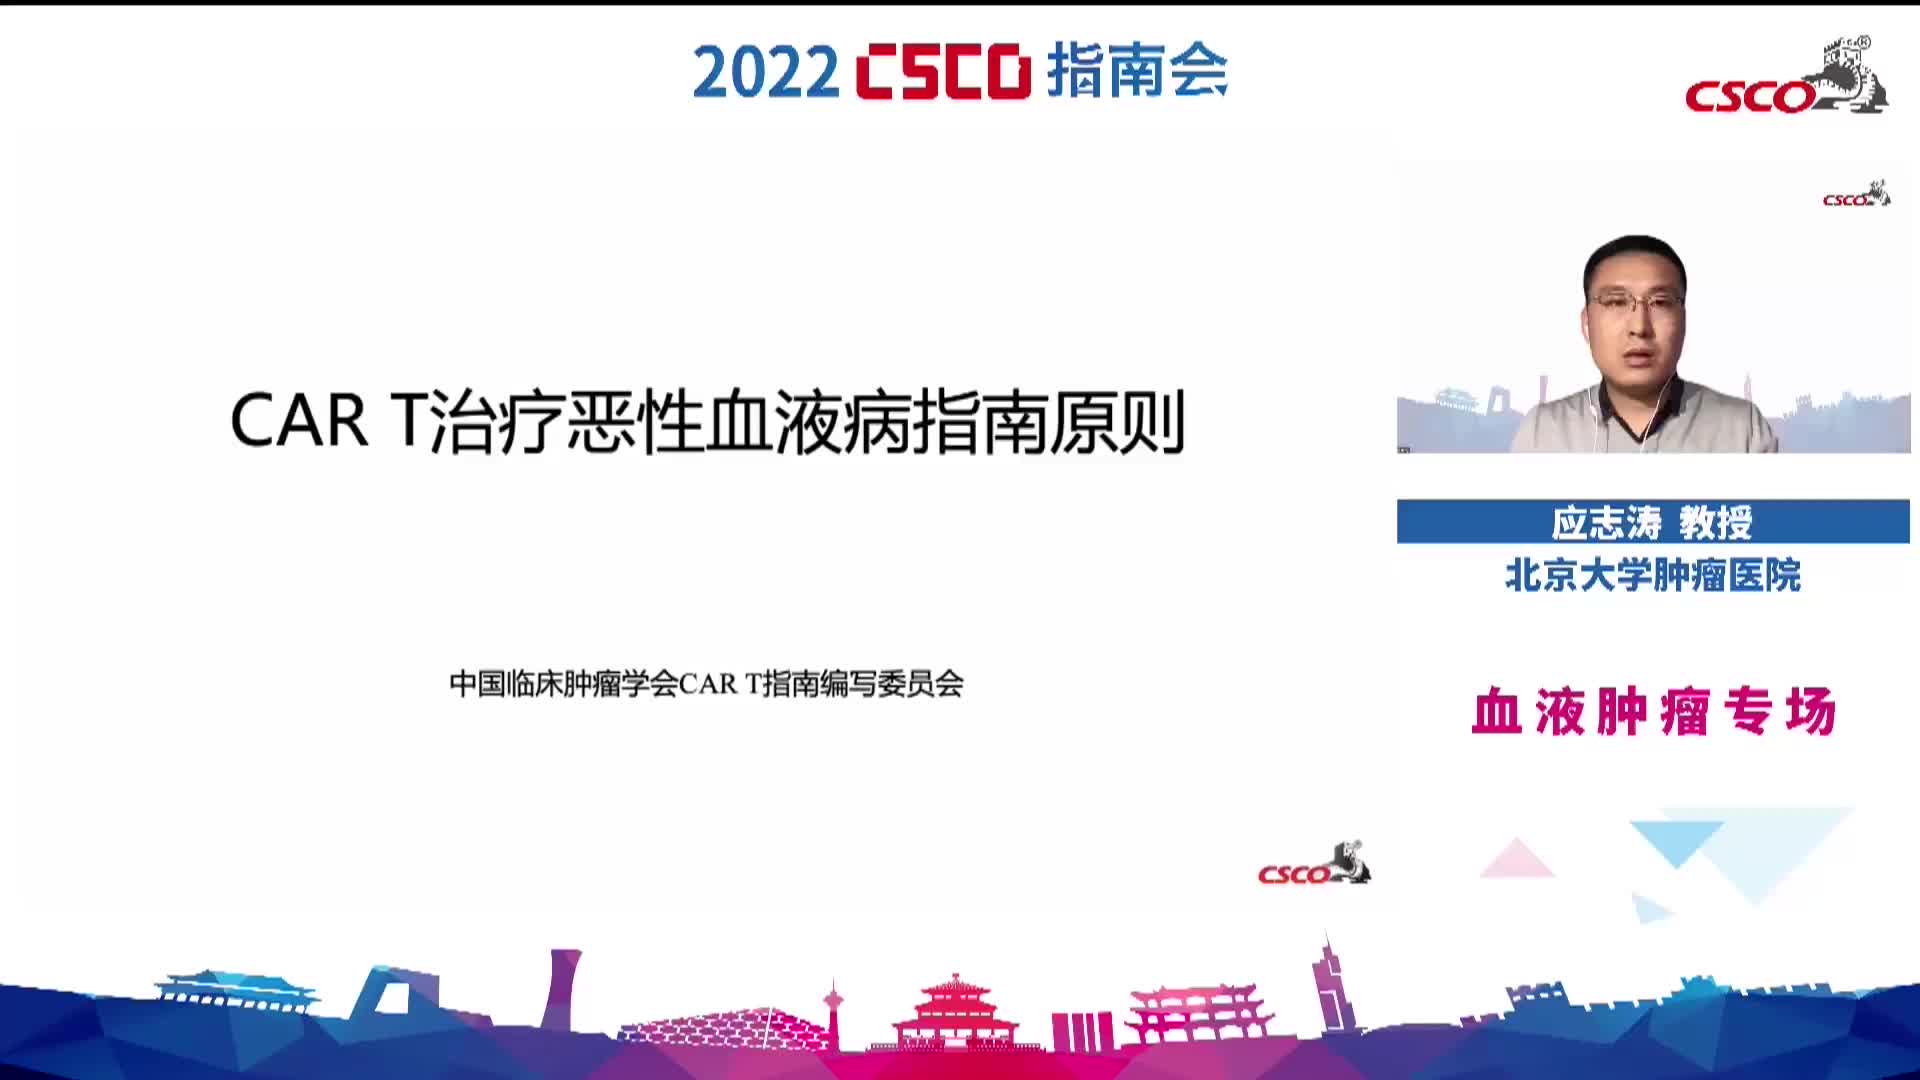 2022 CSCO CAR-T指南原则  